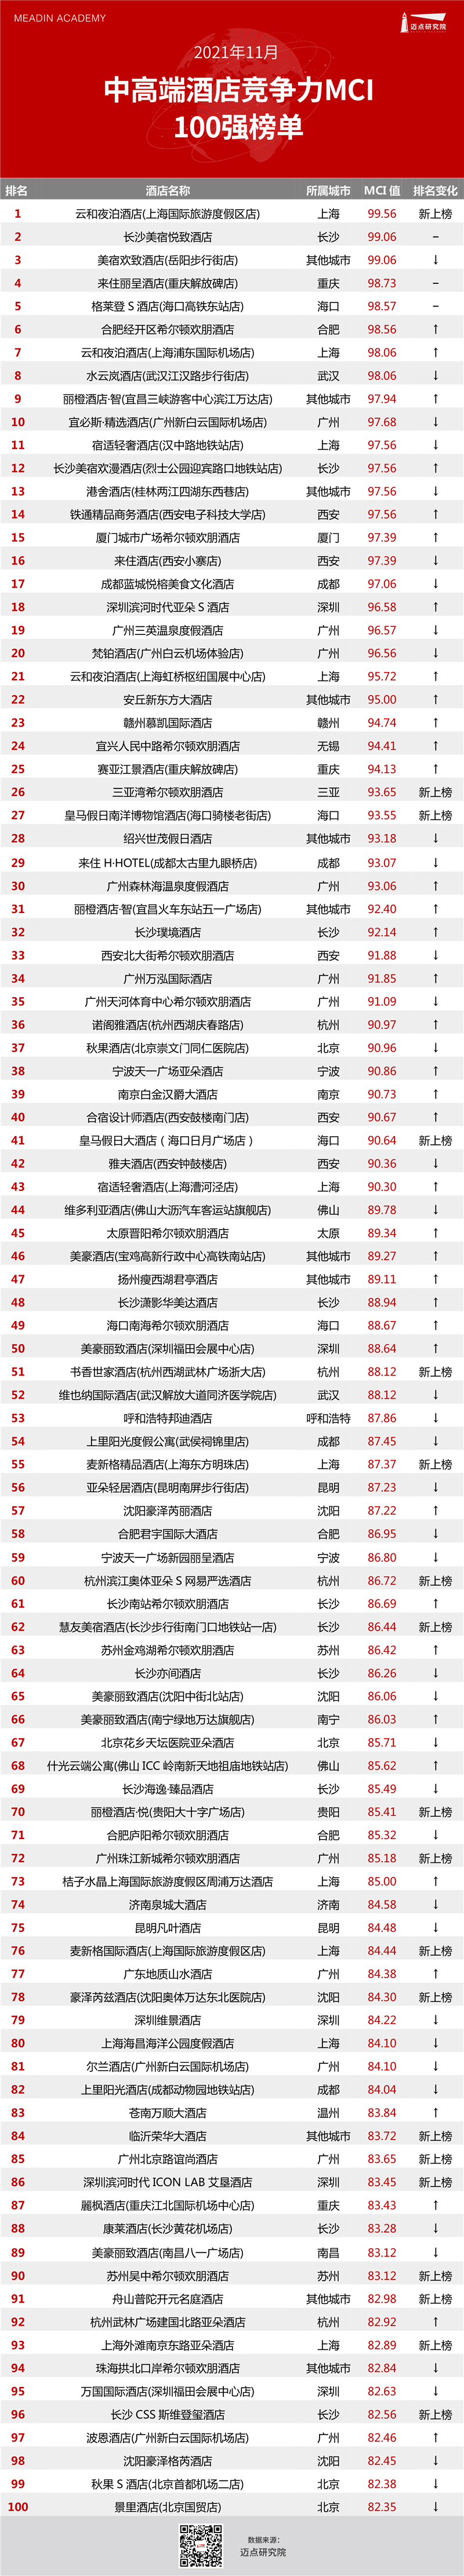 必博体育2021年11月中高端酒店竞争力指数（MCI）100强榜单(图1)